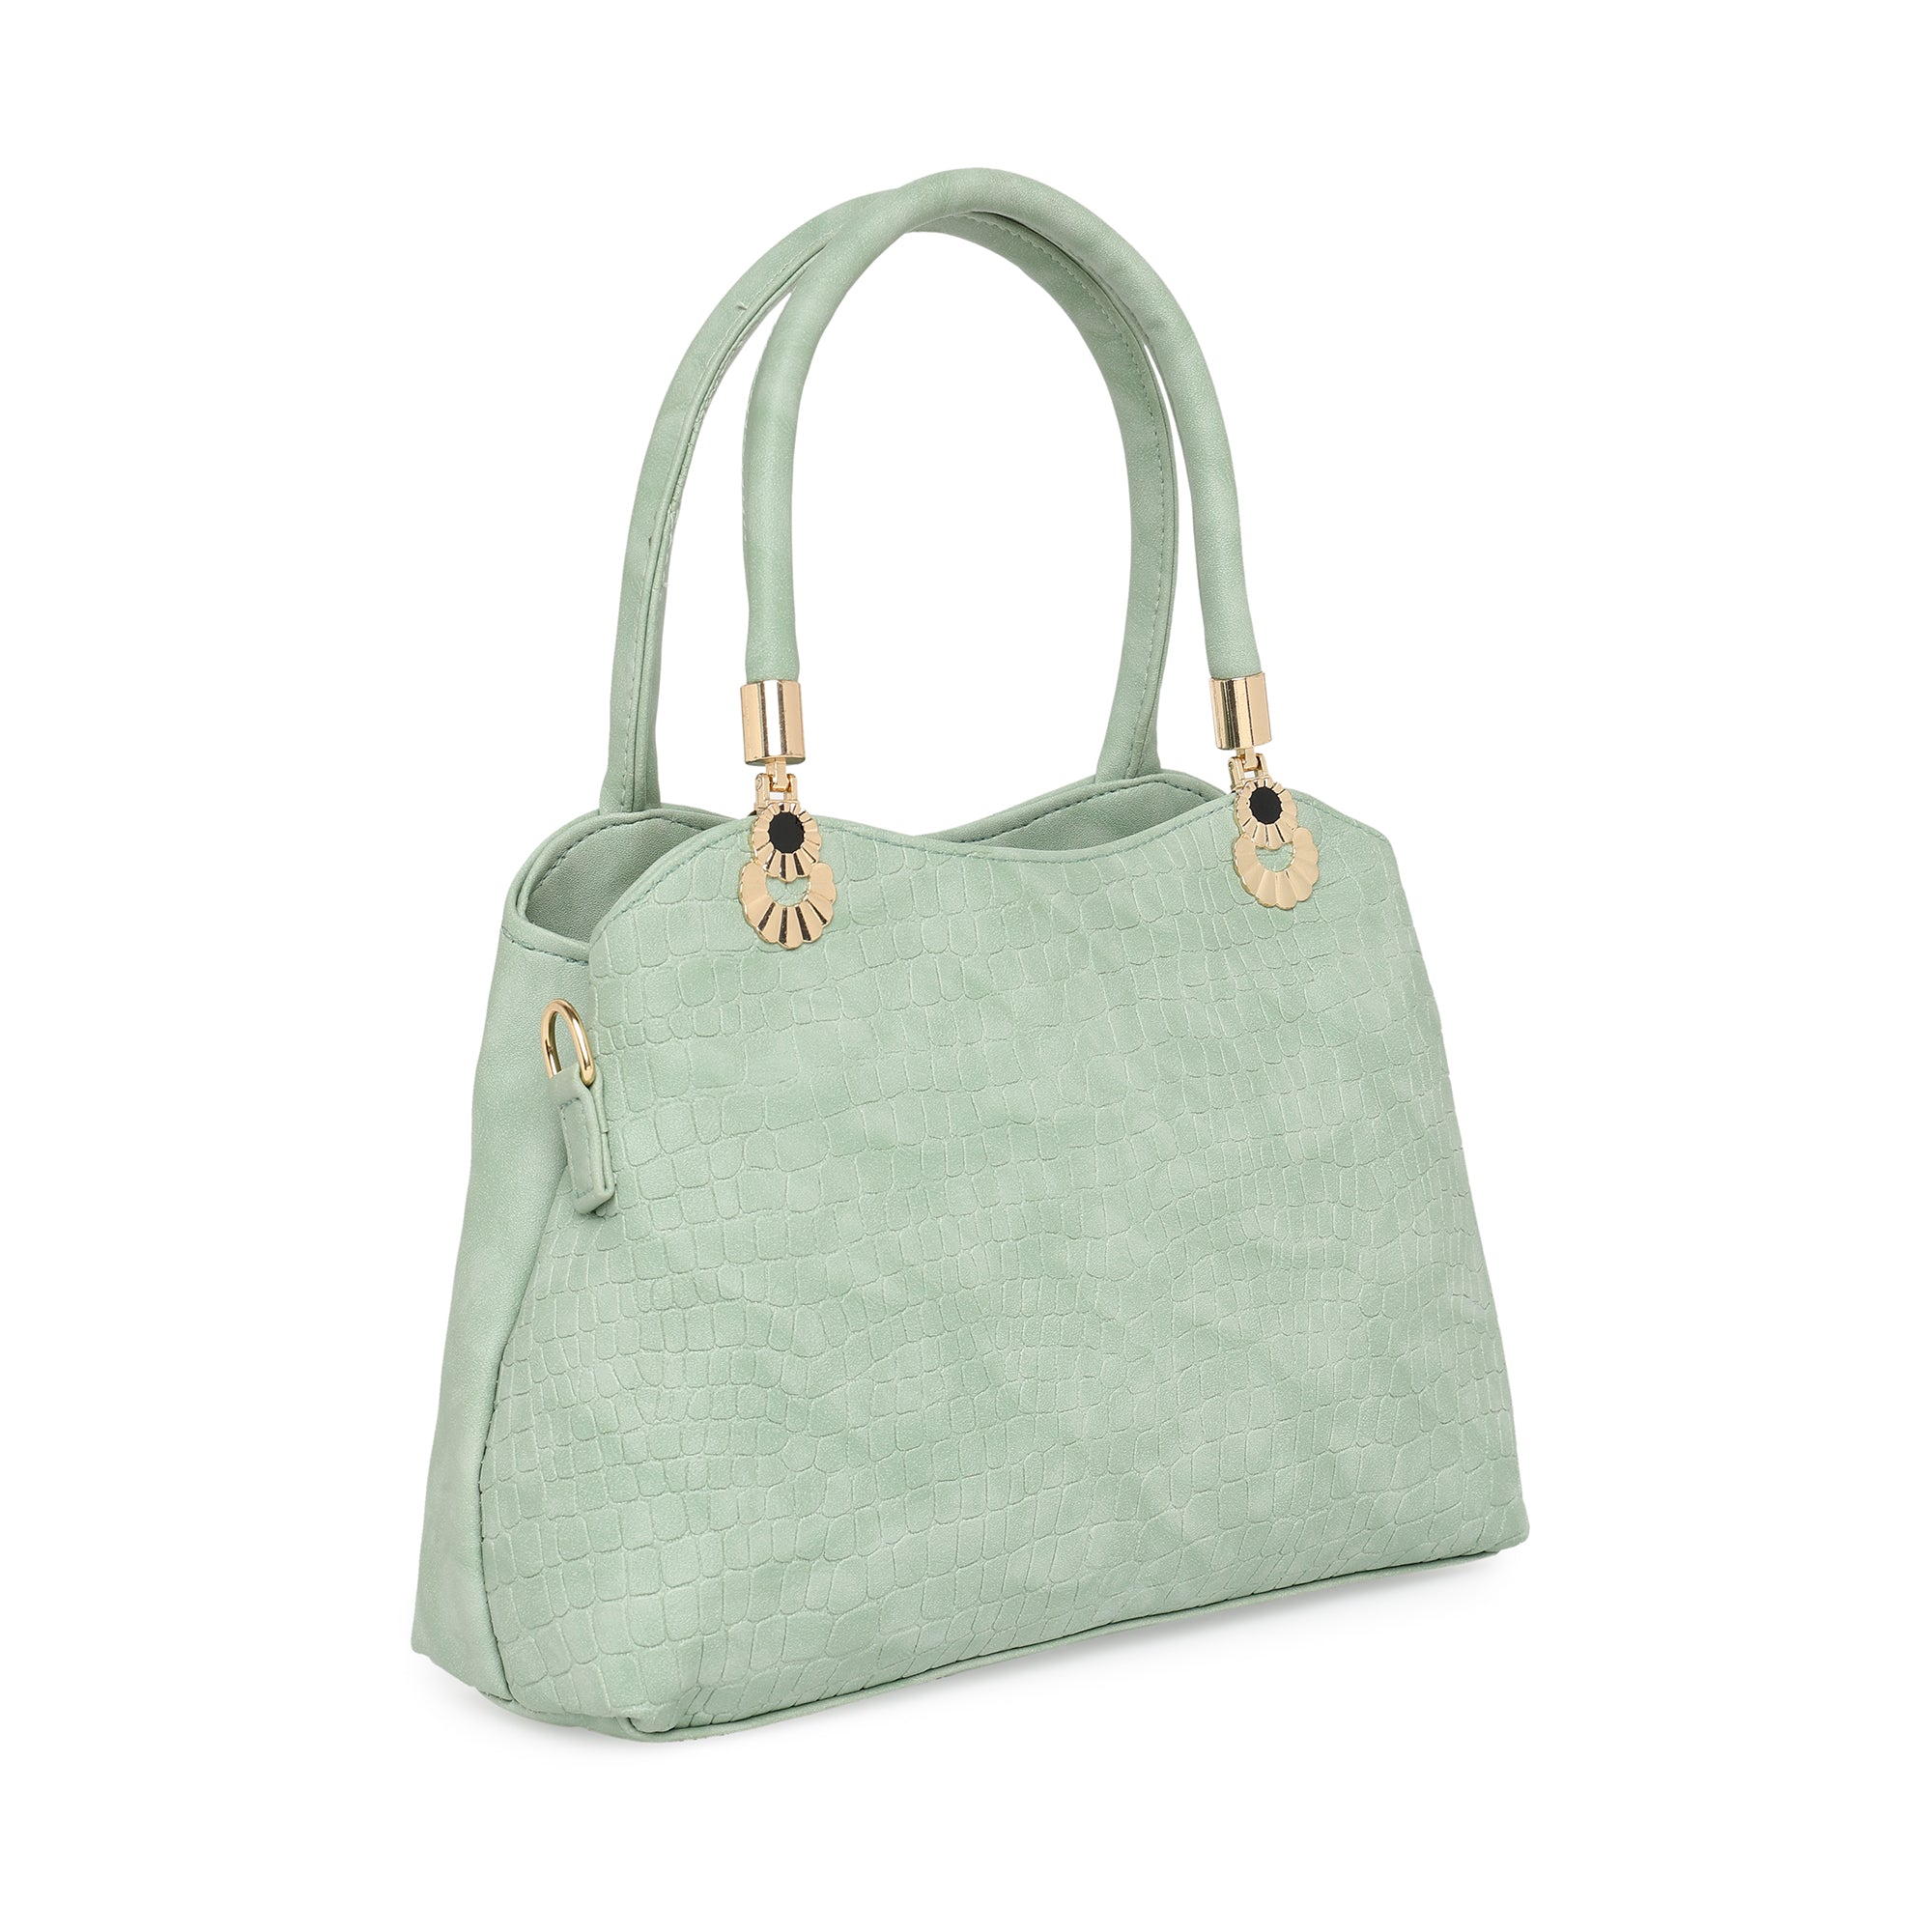 Pista Green Women Vegan Leather Handbag With Belt